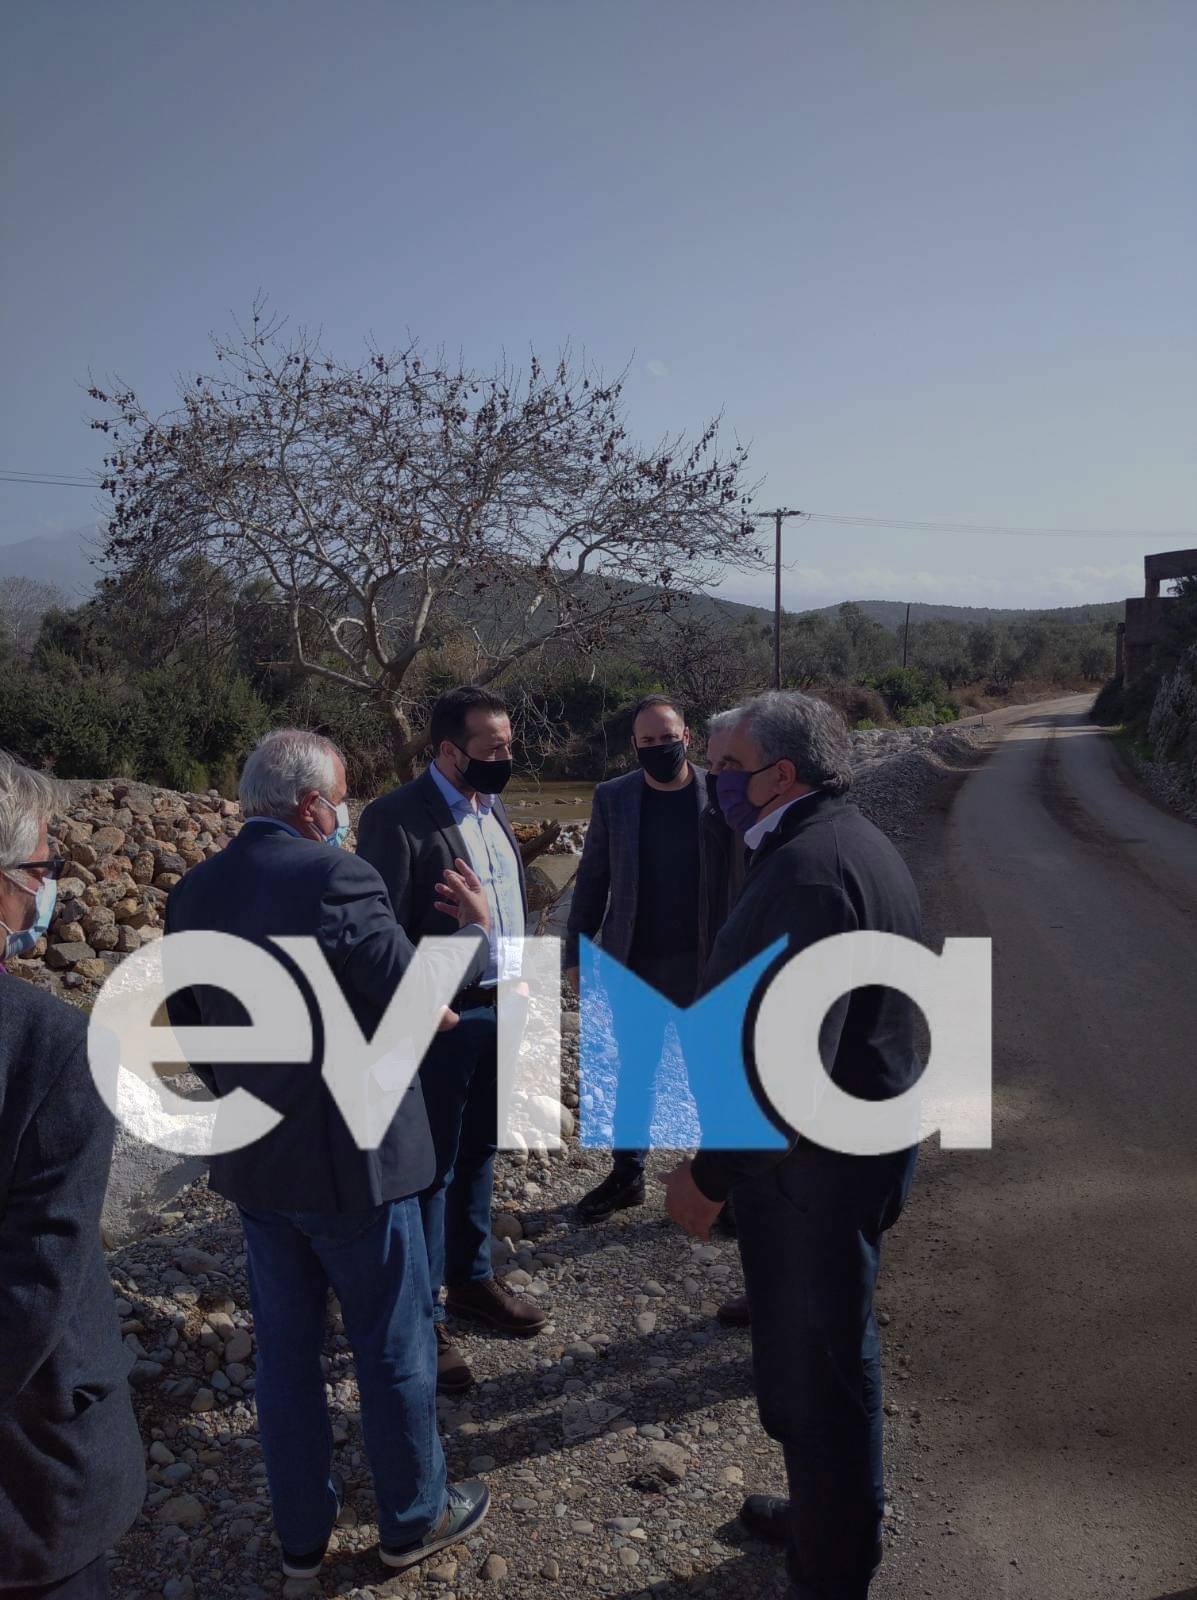 Χατζηγιαννάκης: “Η Εύβοια παραμένει απροστάτευτη” – Περιοδεία του ΣΥΡΙΖΑ στις περιοχές που χτύπησε η “Θάλεια”